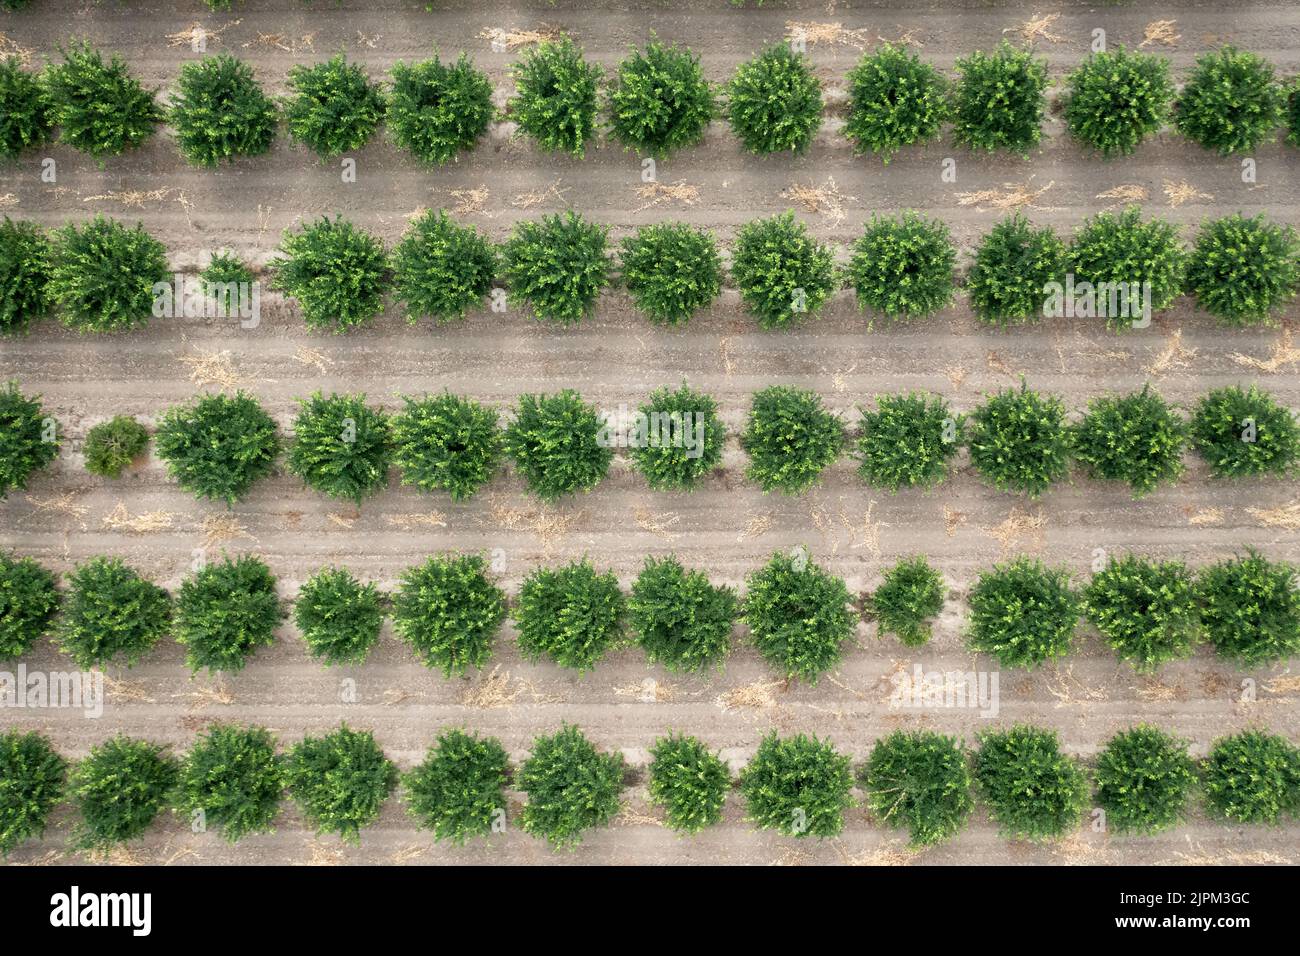 Vue aérienne du verger d'agrumes. Vue de dessus sur les citronniers en culture. Photo de haute qualité Banque D'Images